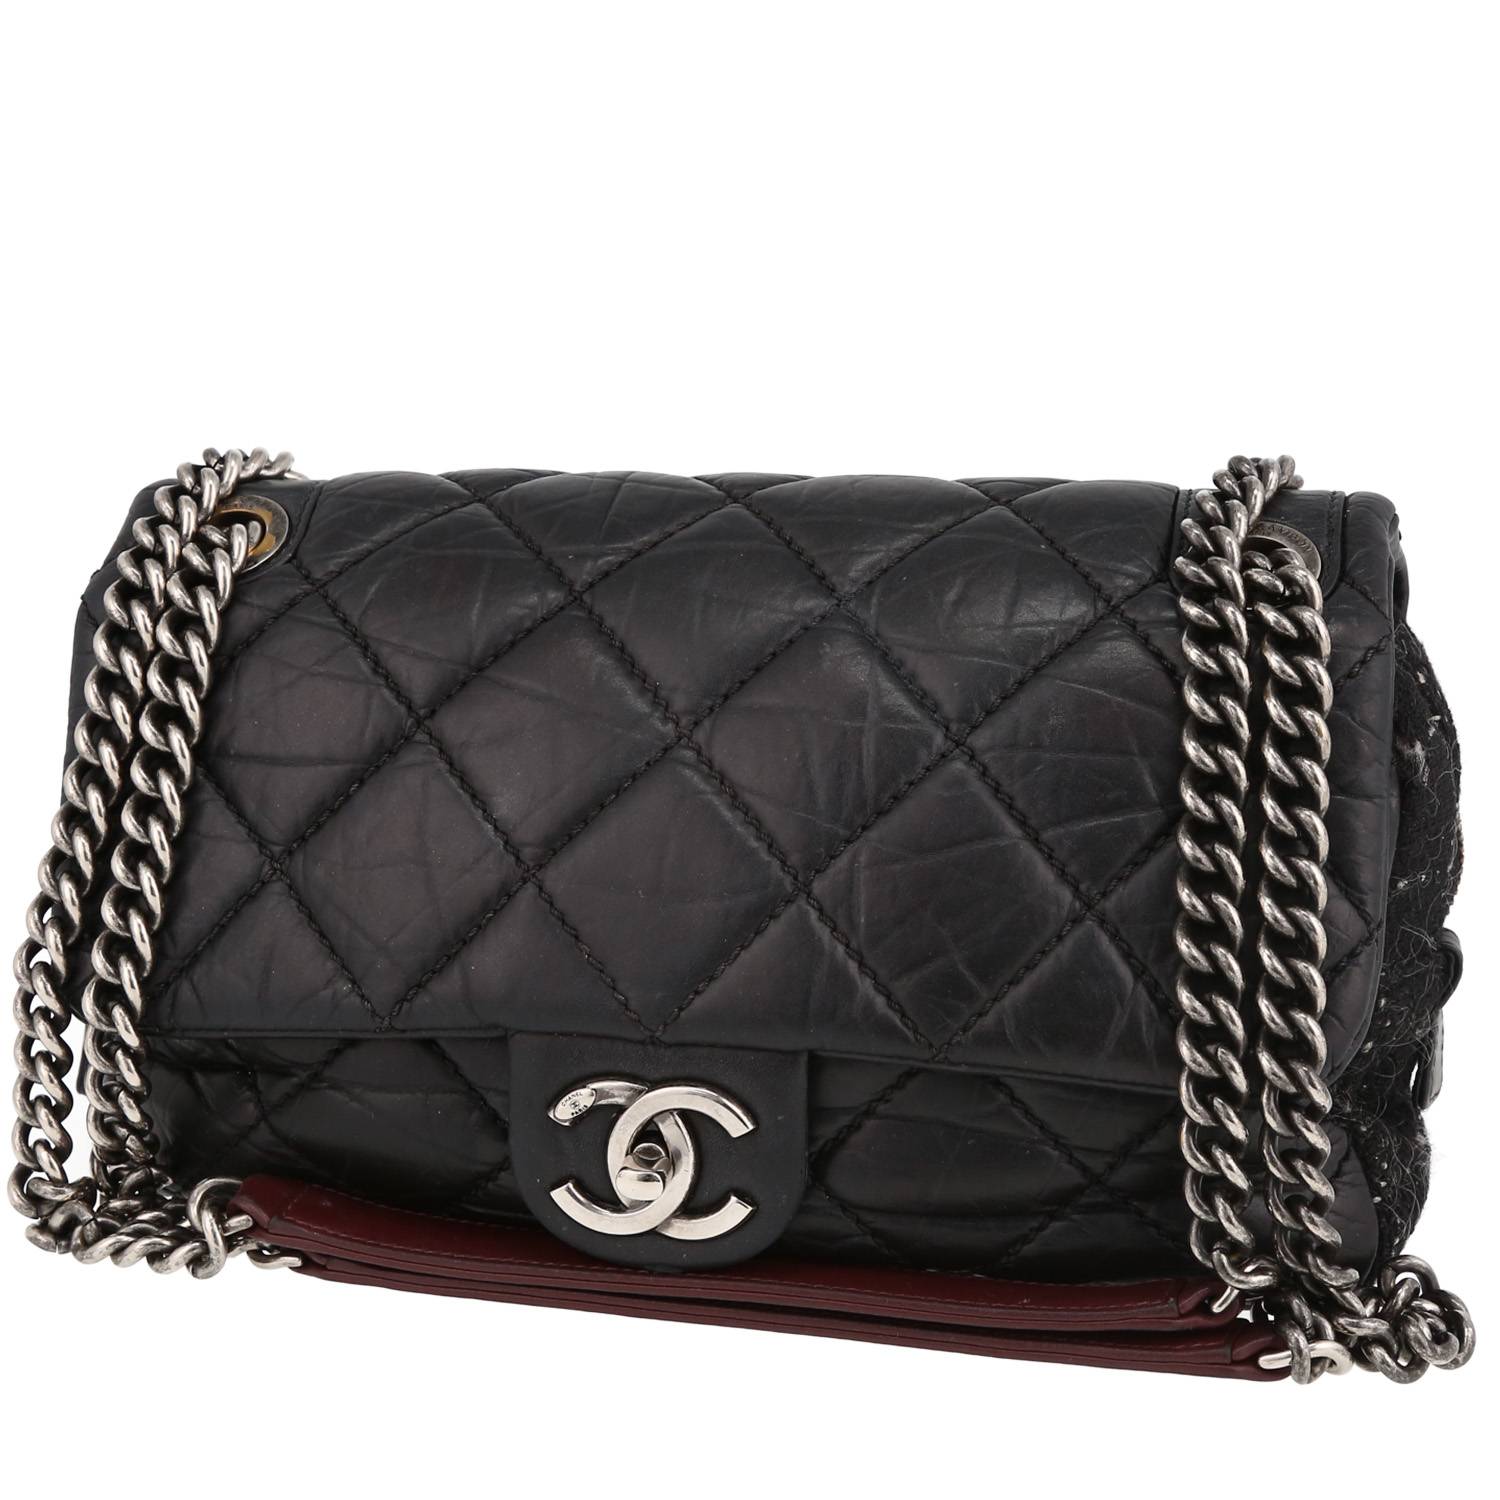 Chanel Coco Pleats Flap Bag - Black Shoulder Bags, Handbags - CHA848355